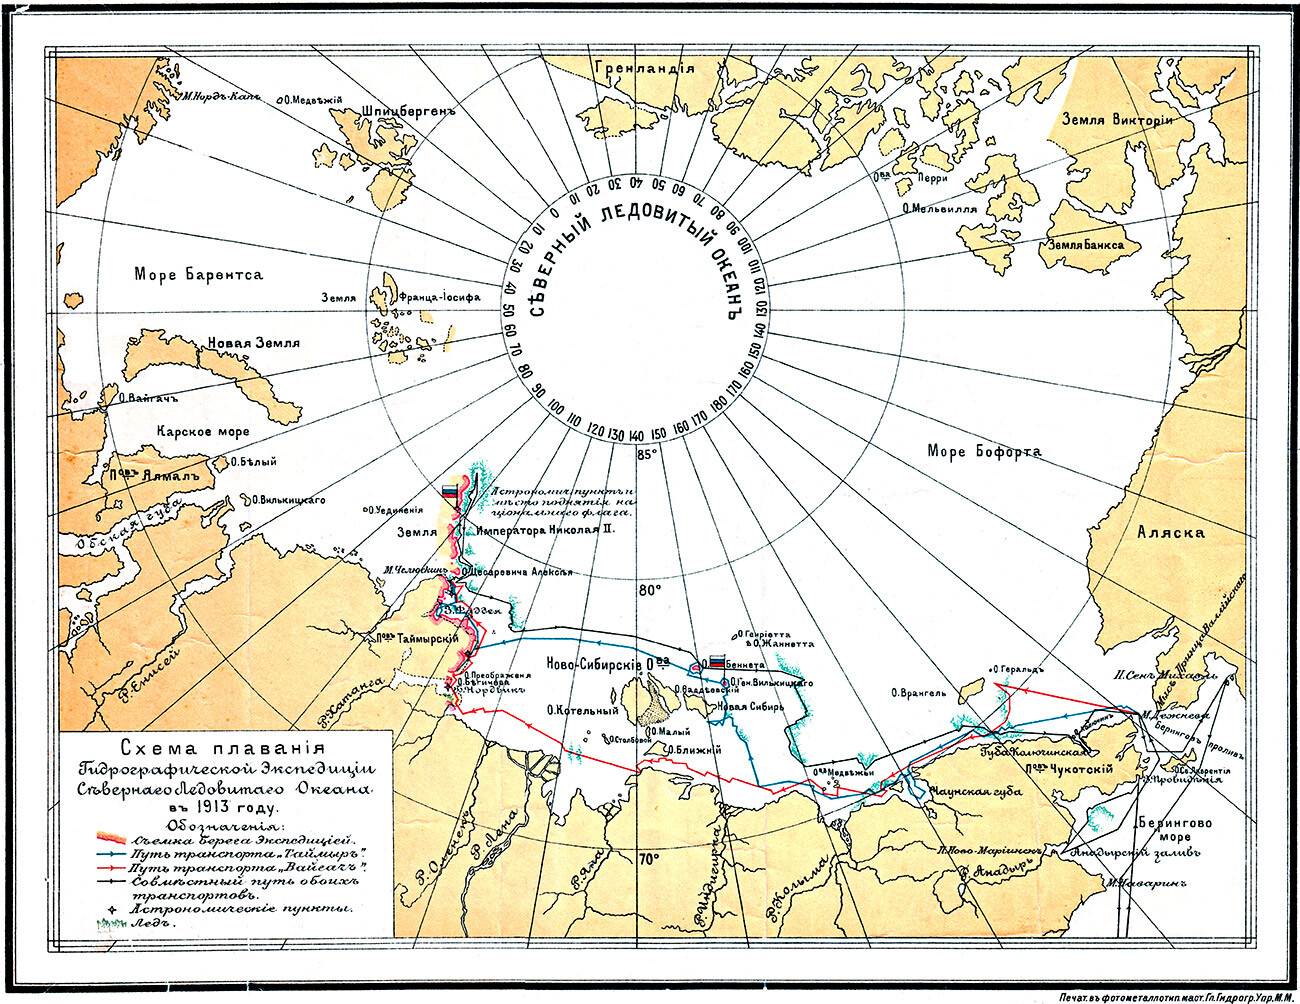 La ruta del viaje de la Expedición Hidrográfica del Océano Ártico en 1913.